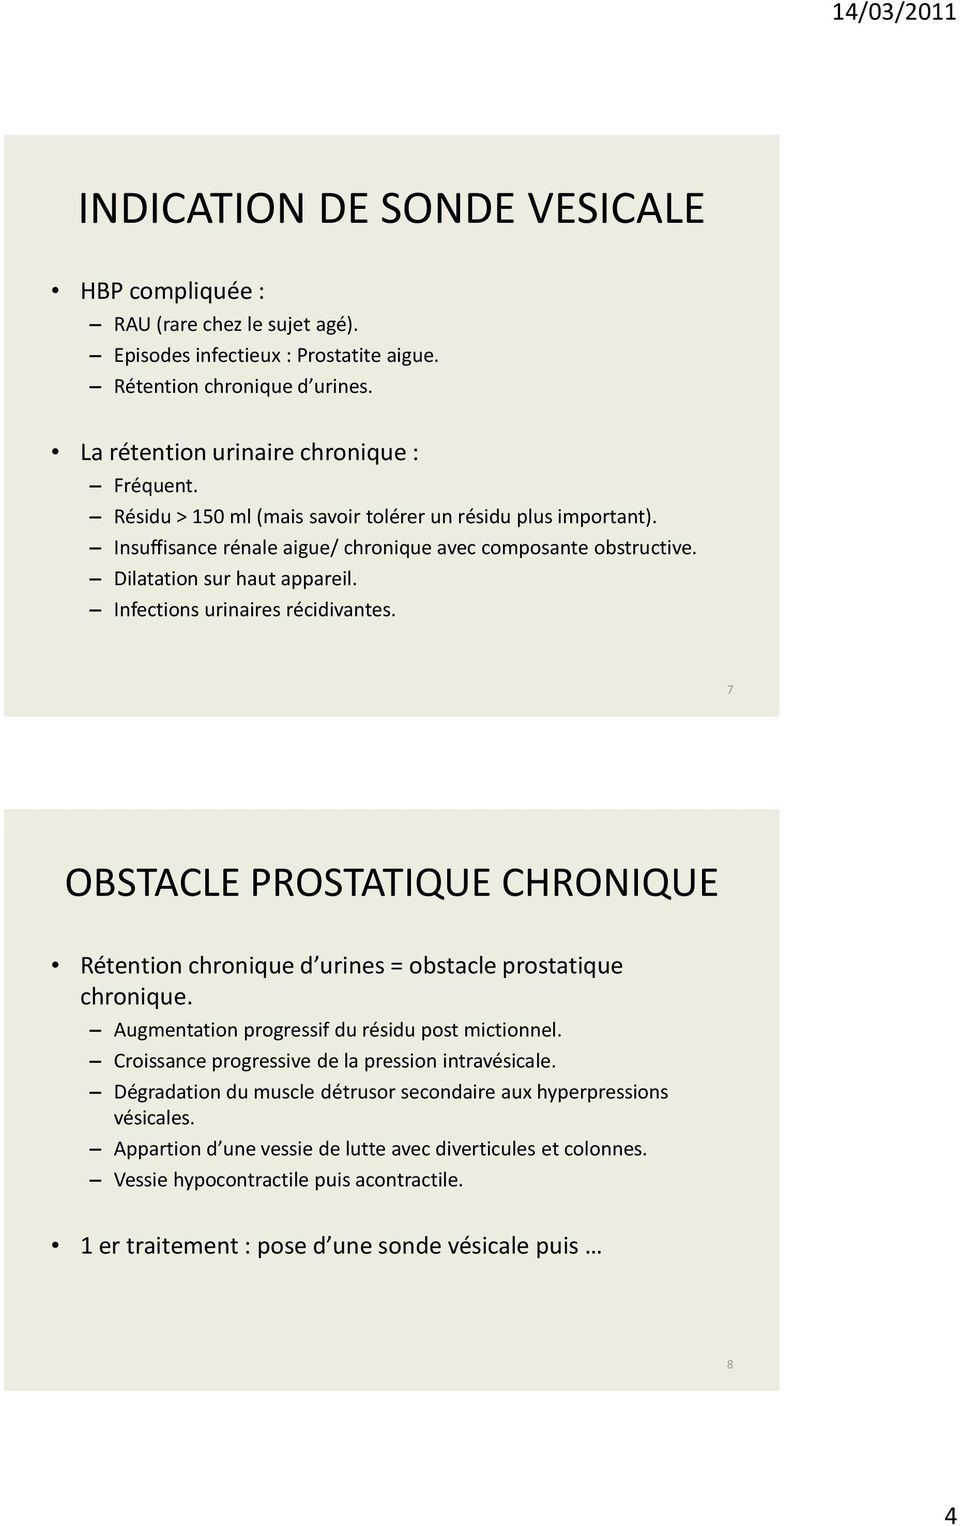 7 OBSTACLE PROSTATIQUE CHRONIQUE Rétention chronique d urines = obstacle prostatique chronique. Augmentation progressif du résidu post mictionnel. Croissance progressive de la pression intravésicale.